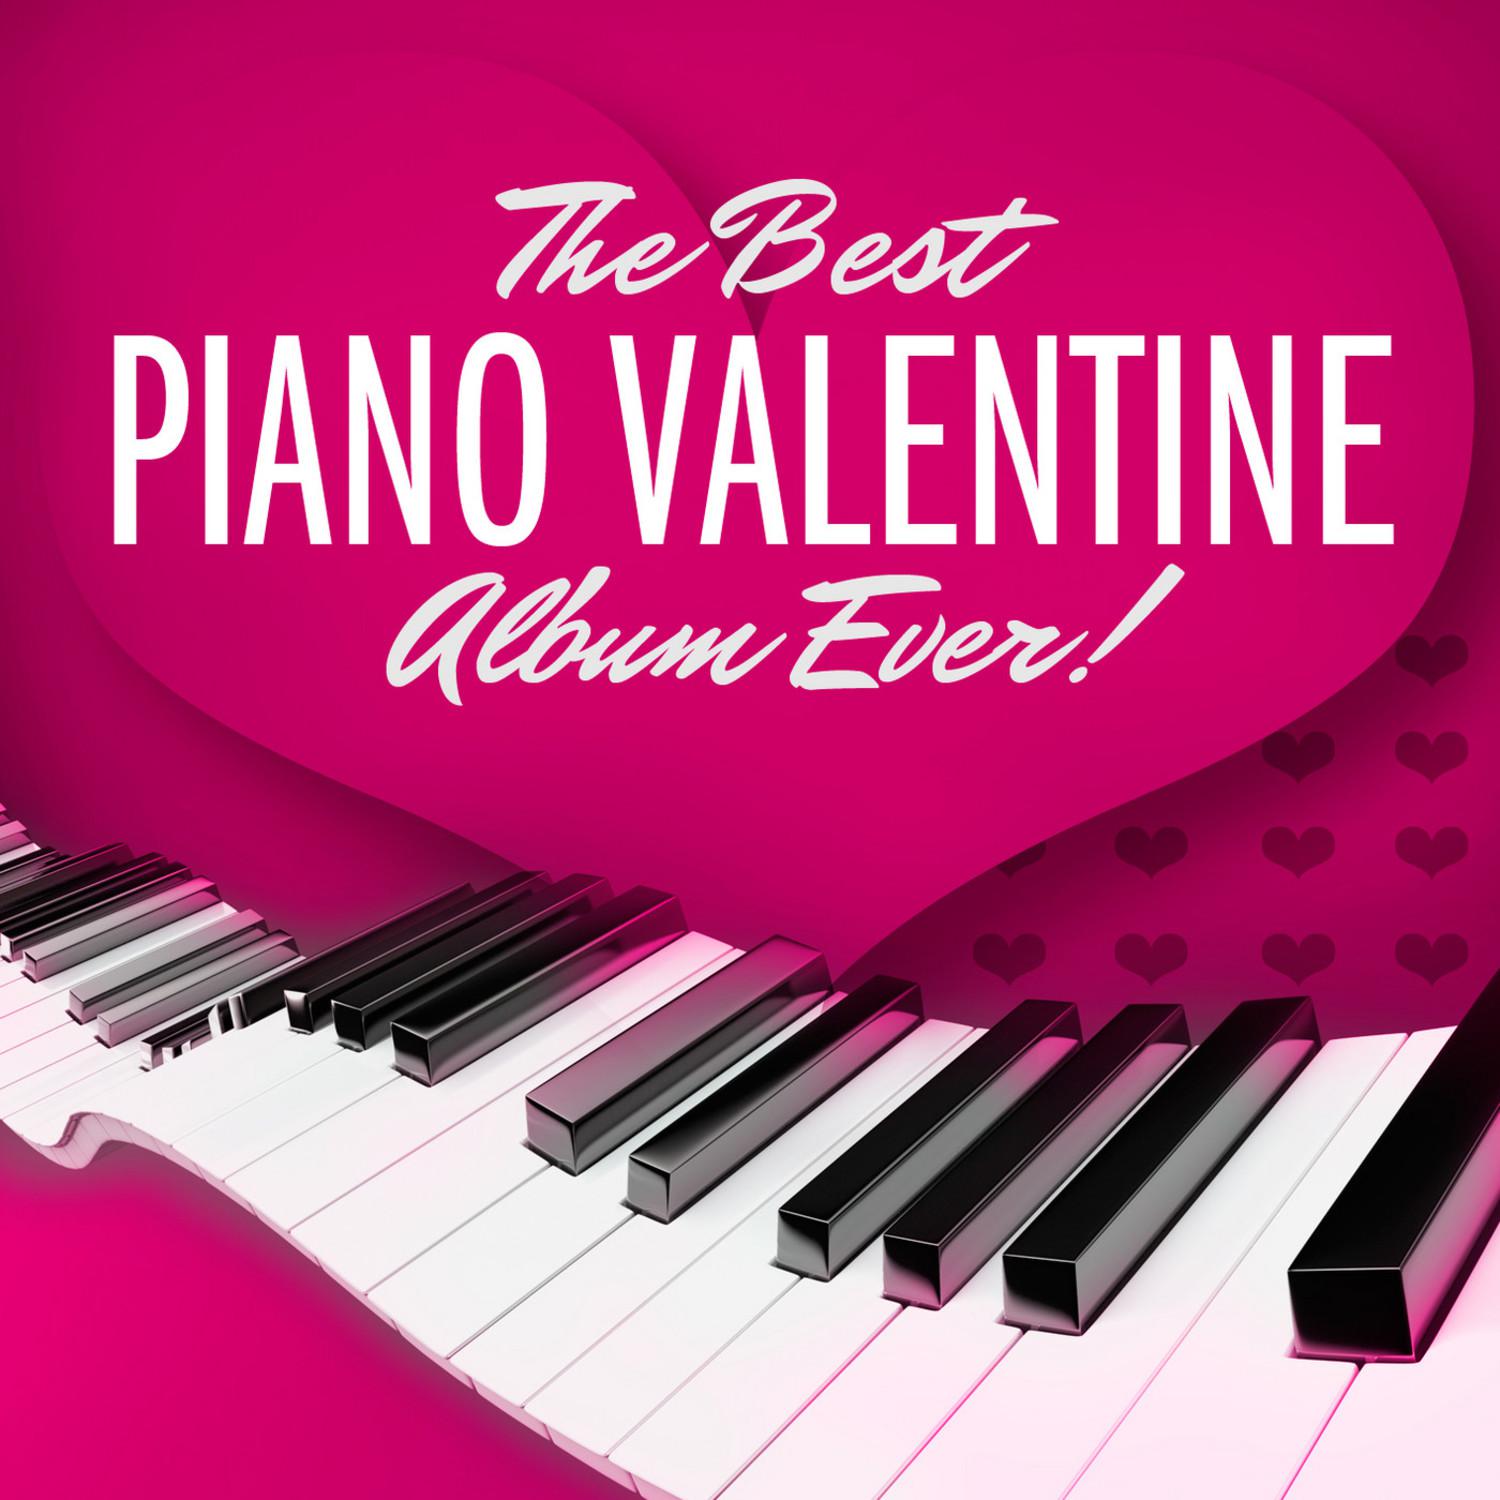 The Best Piano Valentine Album Ever!